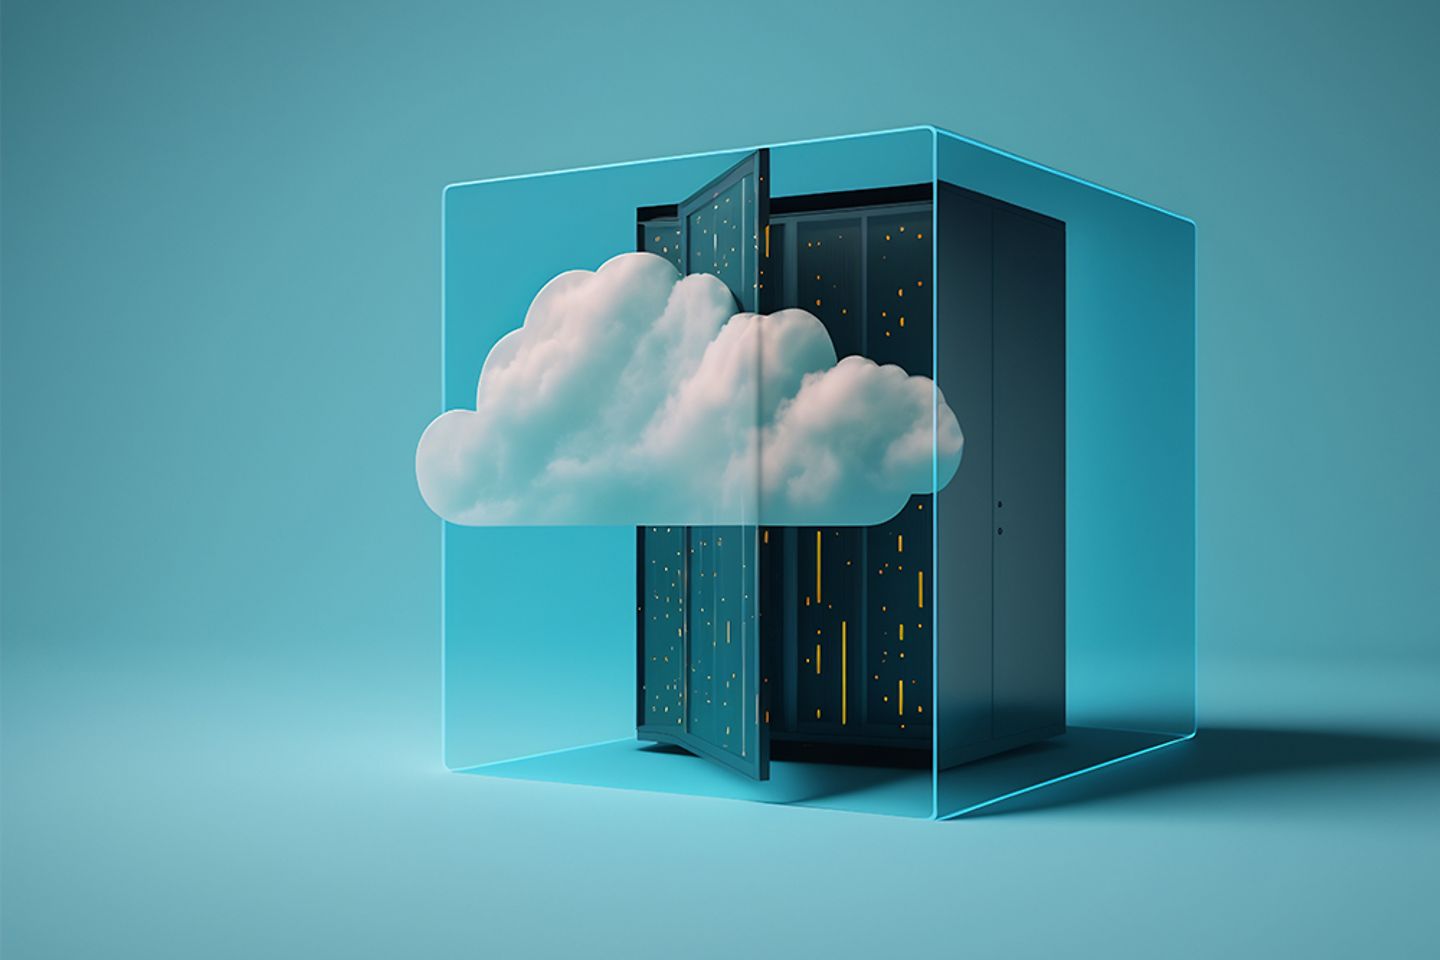 Grafiek van een serverrek en een wolk in een glazen container